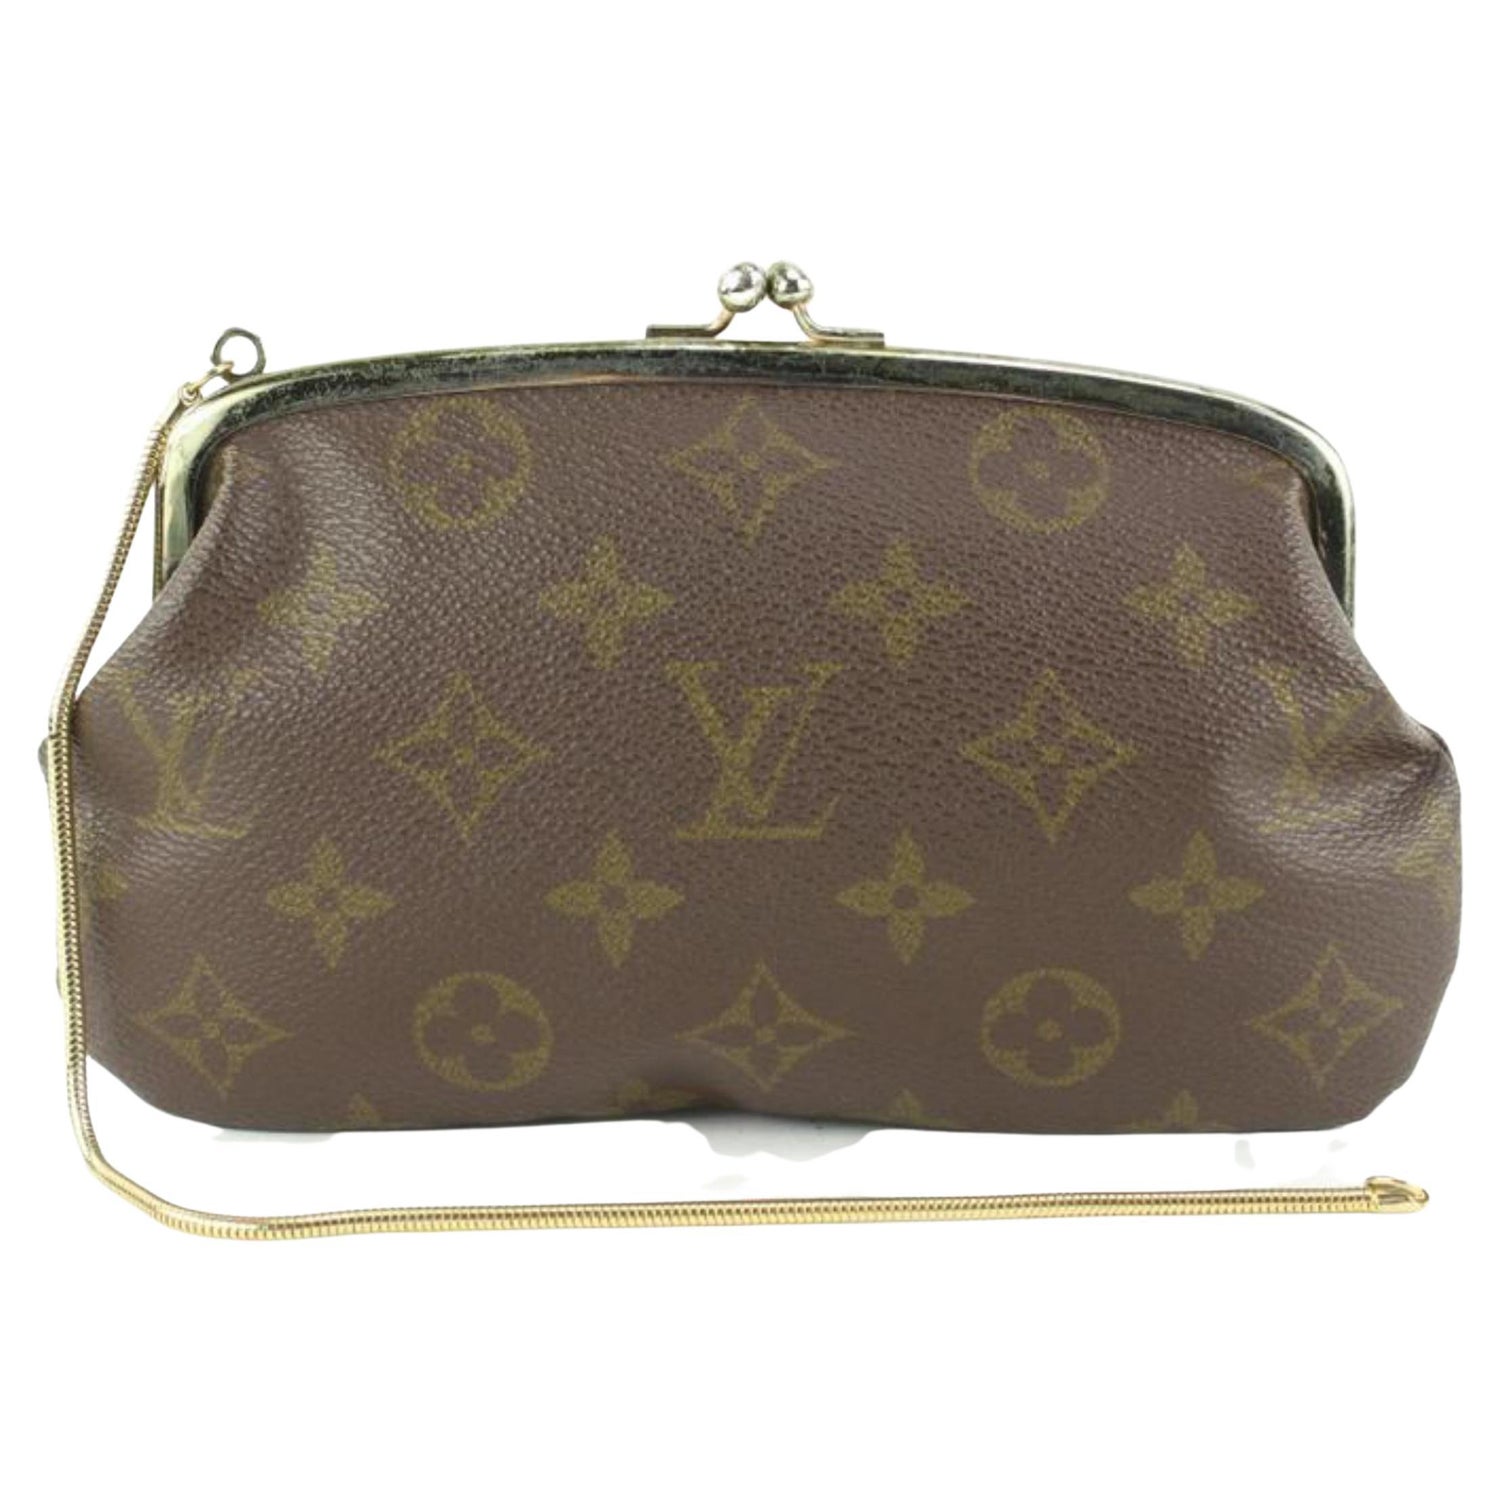 Vintage Louis Vuitton Luxury Monogramed Slim Forming Wallet 